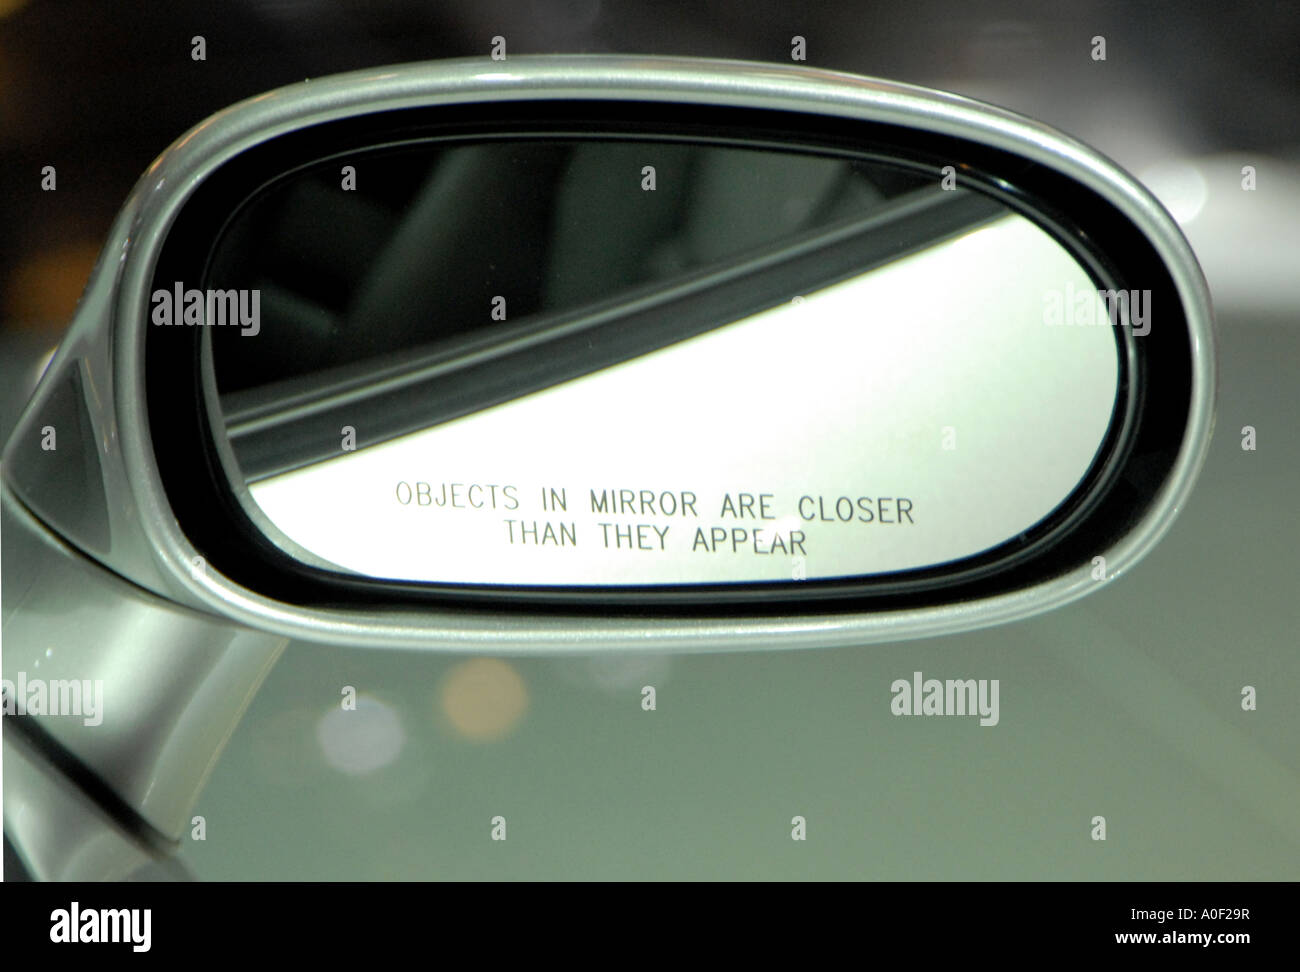 Rückspiegel mit Text der Warnung, die Objekte im Spiegel näher